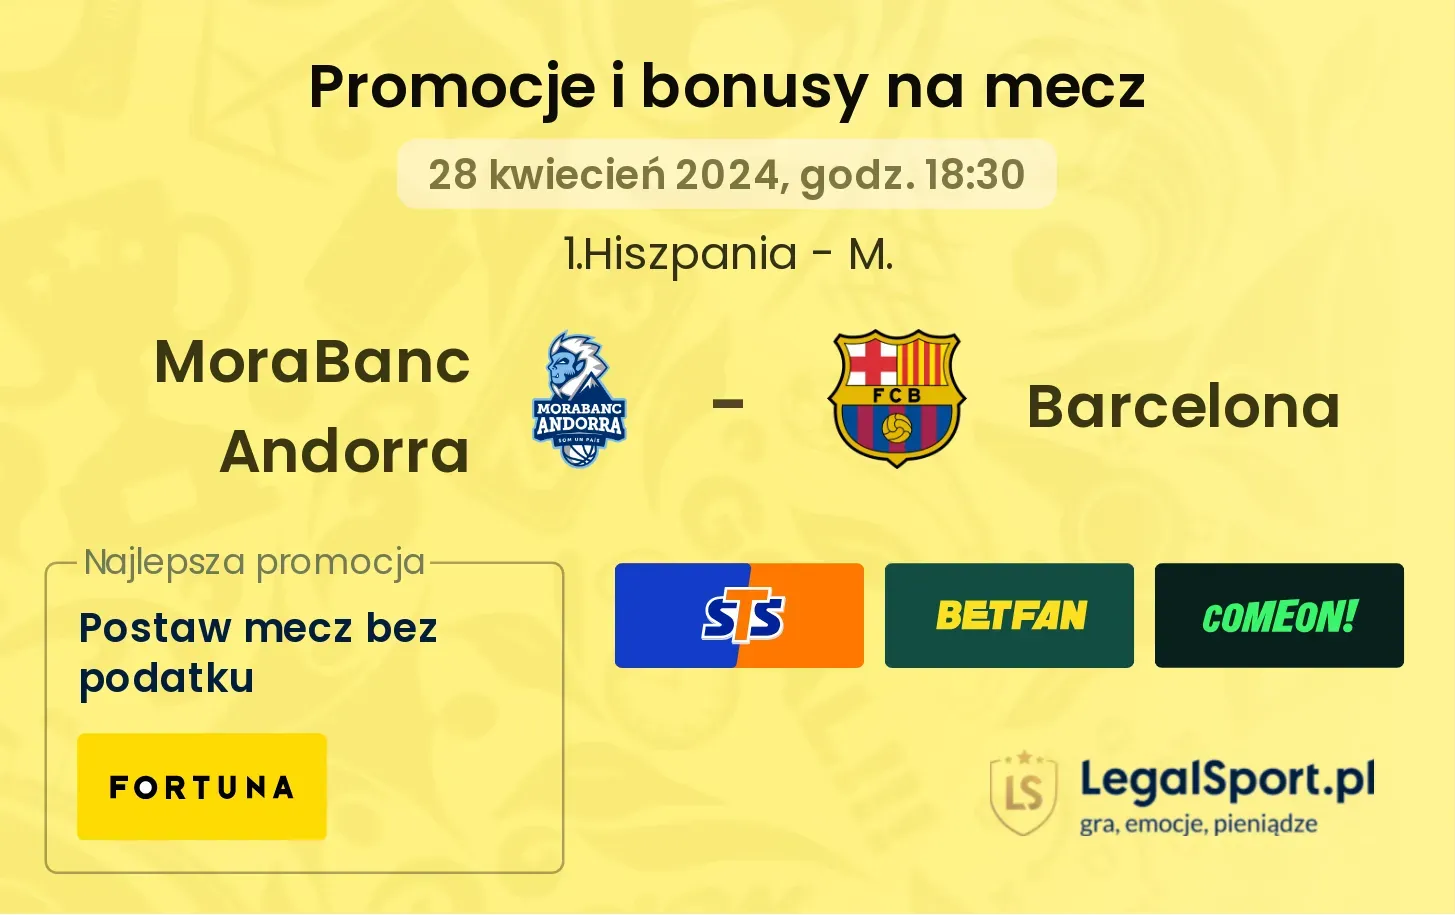 MoraBanc Andorra - Barcelona bonusy i promocje (28.04, 18:30)